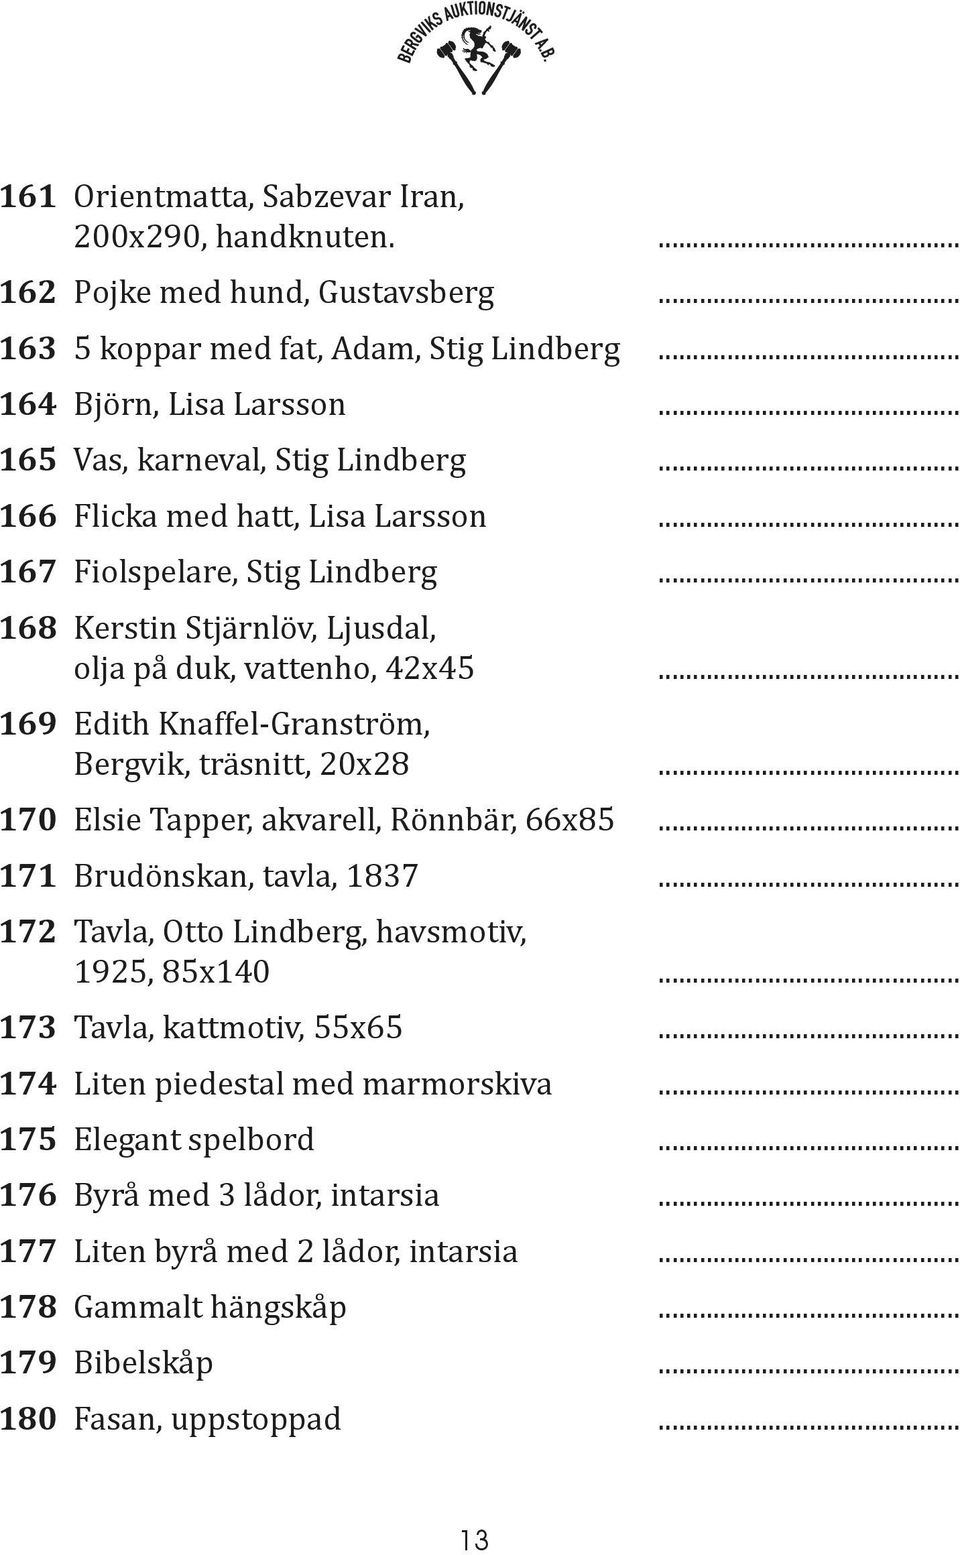 .. 169 Edith Knaffel-Granström, Bergvik, träsnitt, 20x28... 170 Elsie Tapper, akvarell, Rönnbär, 66x85... 171 Brudönskan, tavla, 1837... 172 Tavla, Otto Lindberg, havsmotiv, 1925, 85x140.